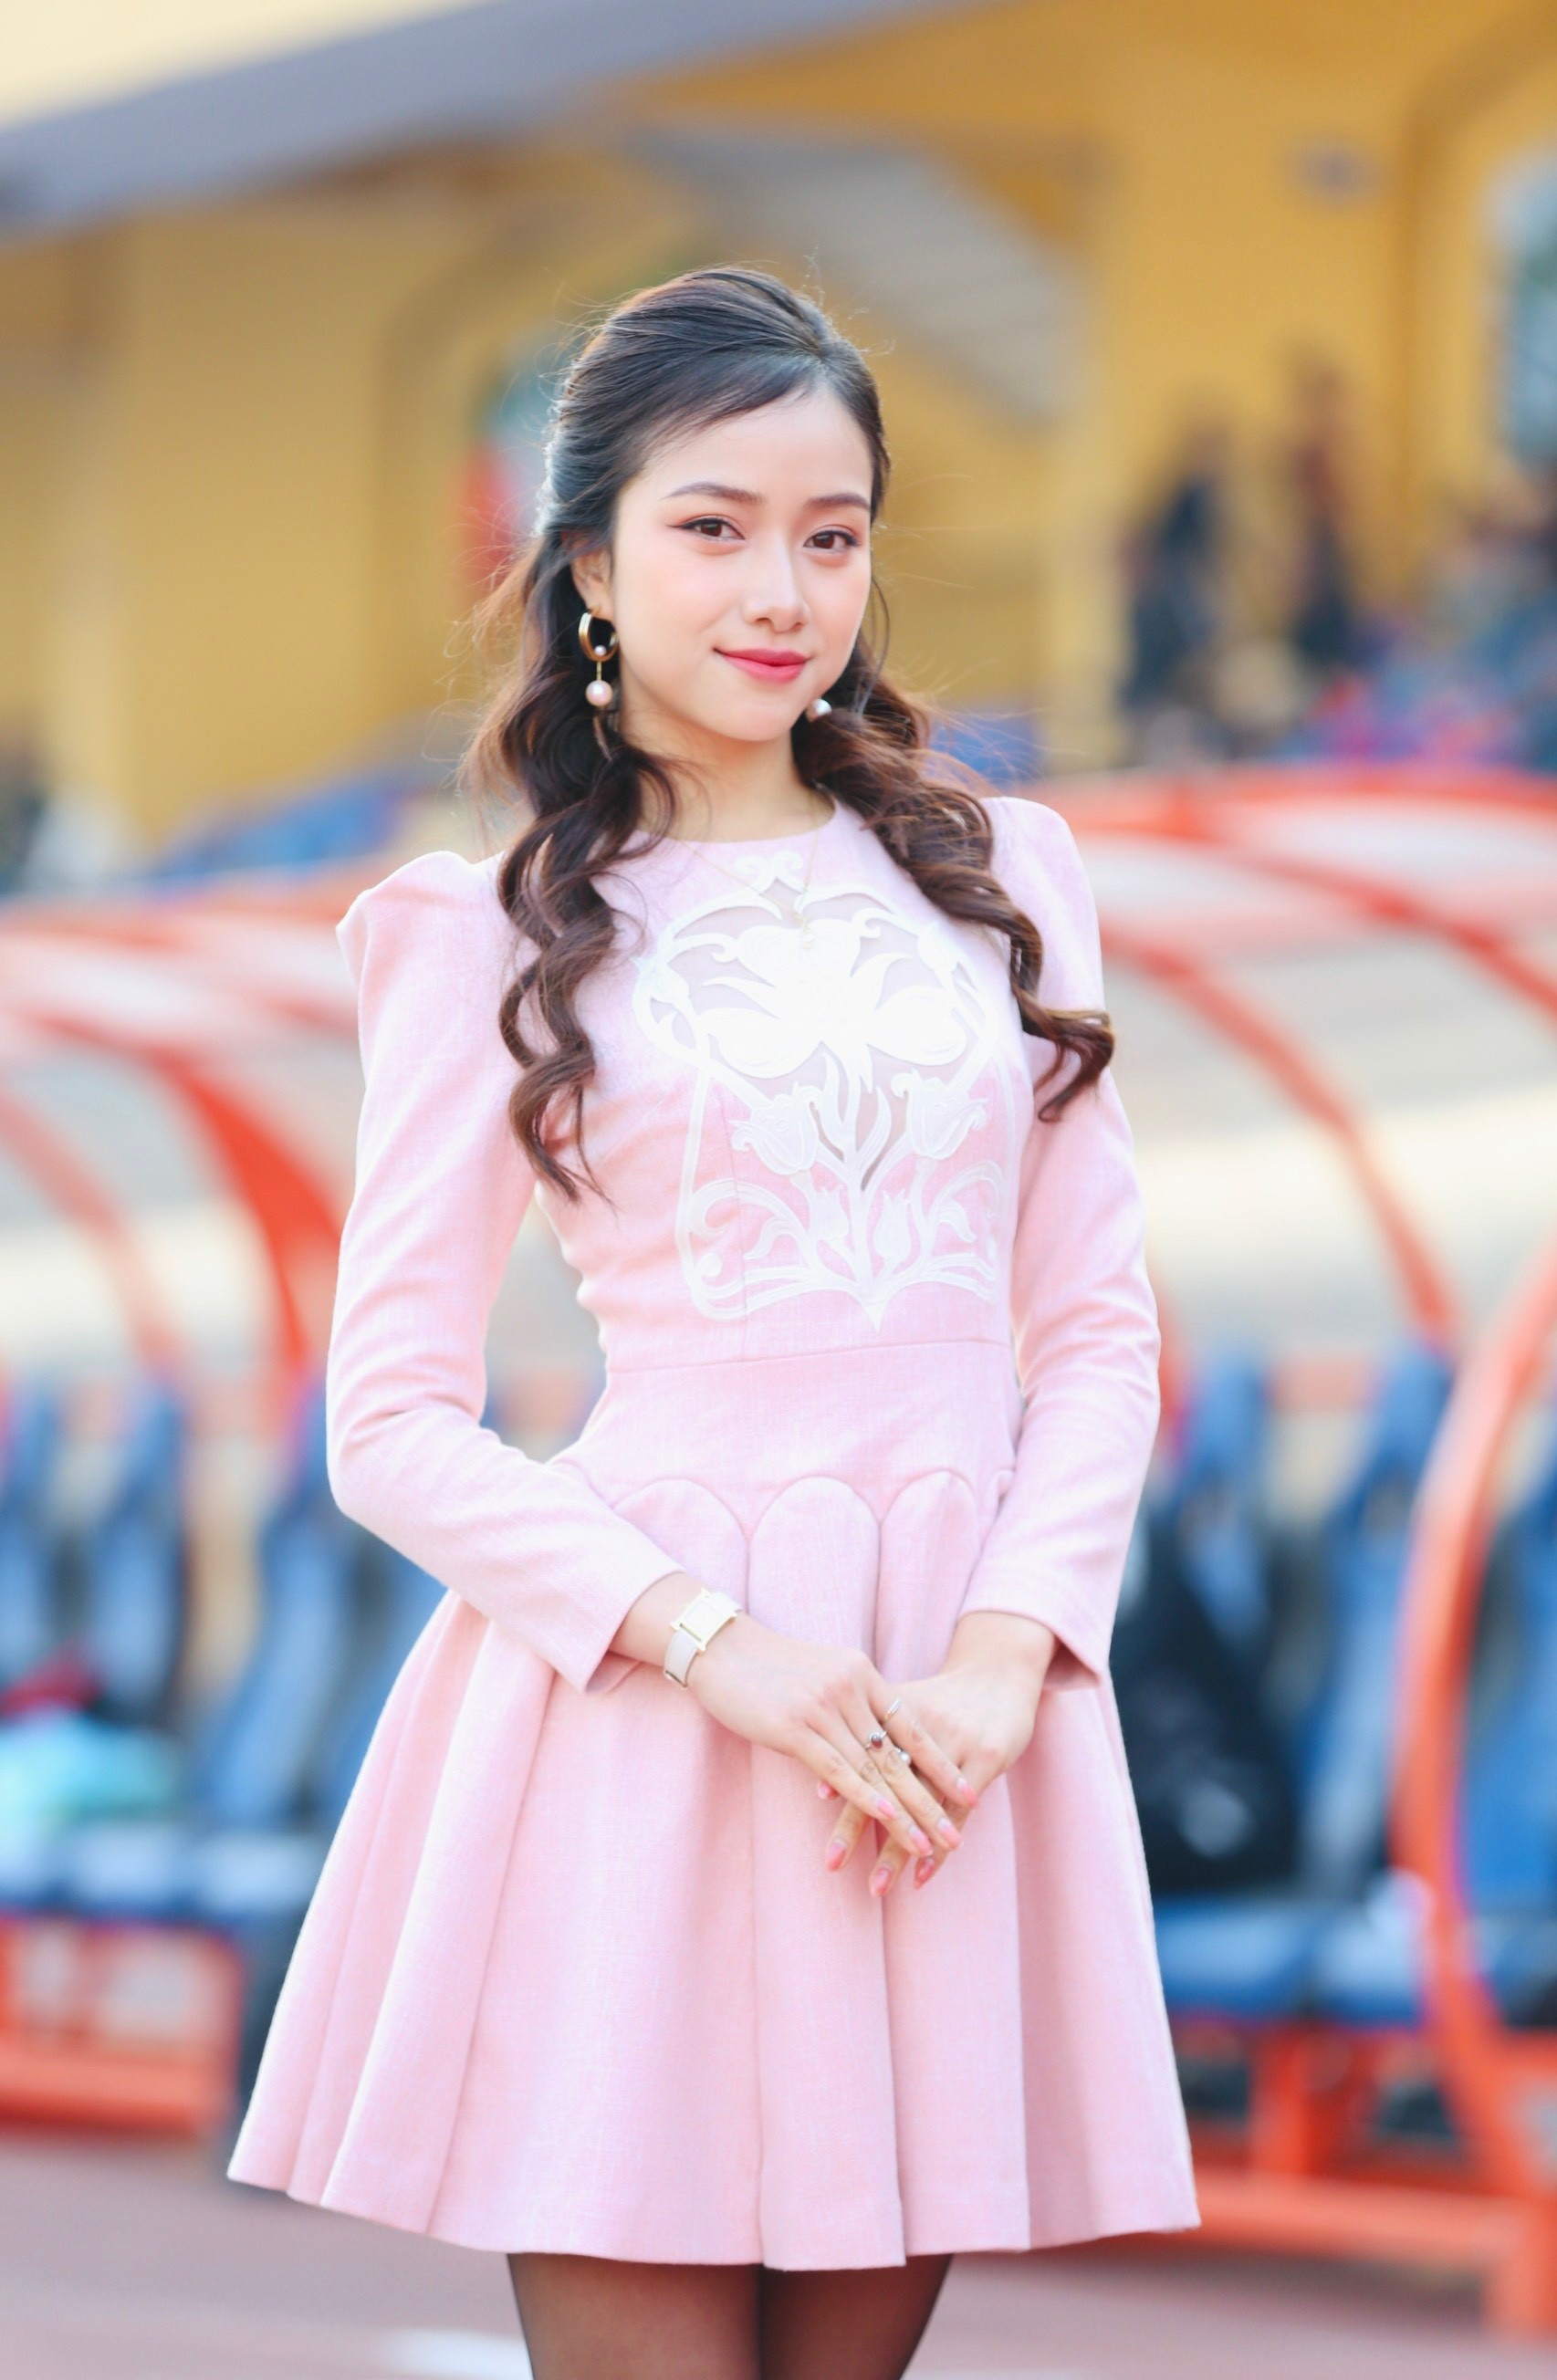 Hoa hậu Đỗ Mỹ Linh đến sân Hàng Đẫy cổ vũ đội bóng của ông xã tranh Siêu cúp ảnh 10